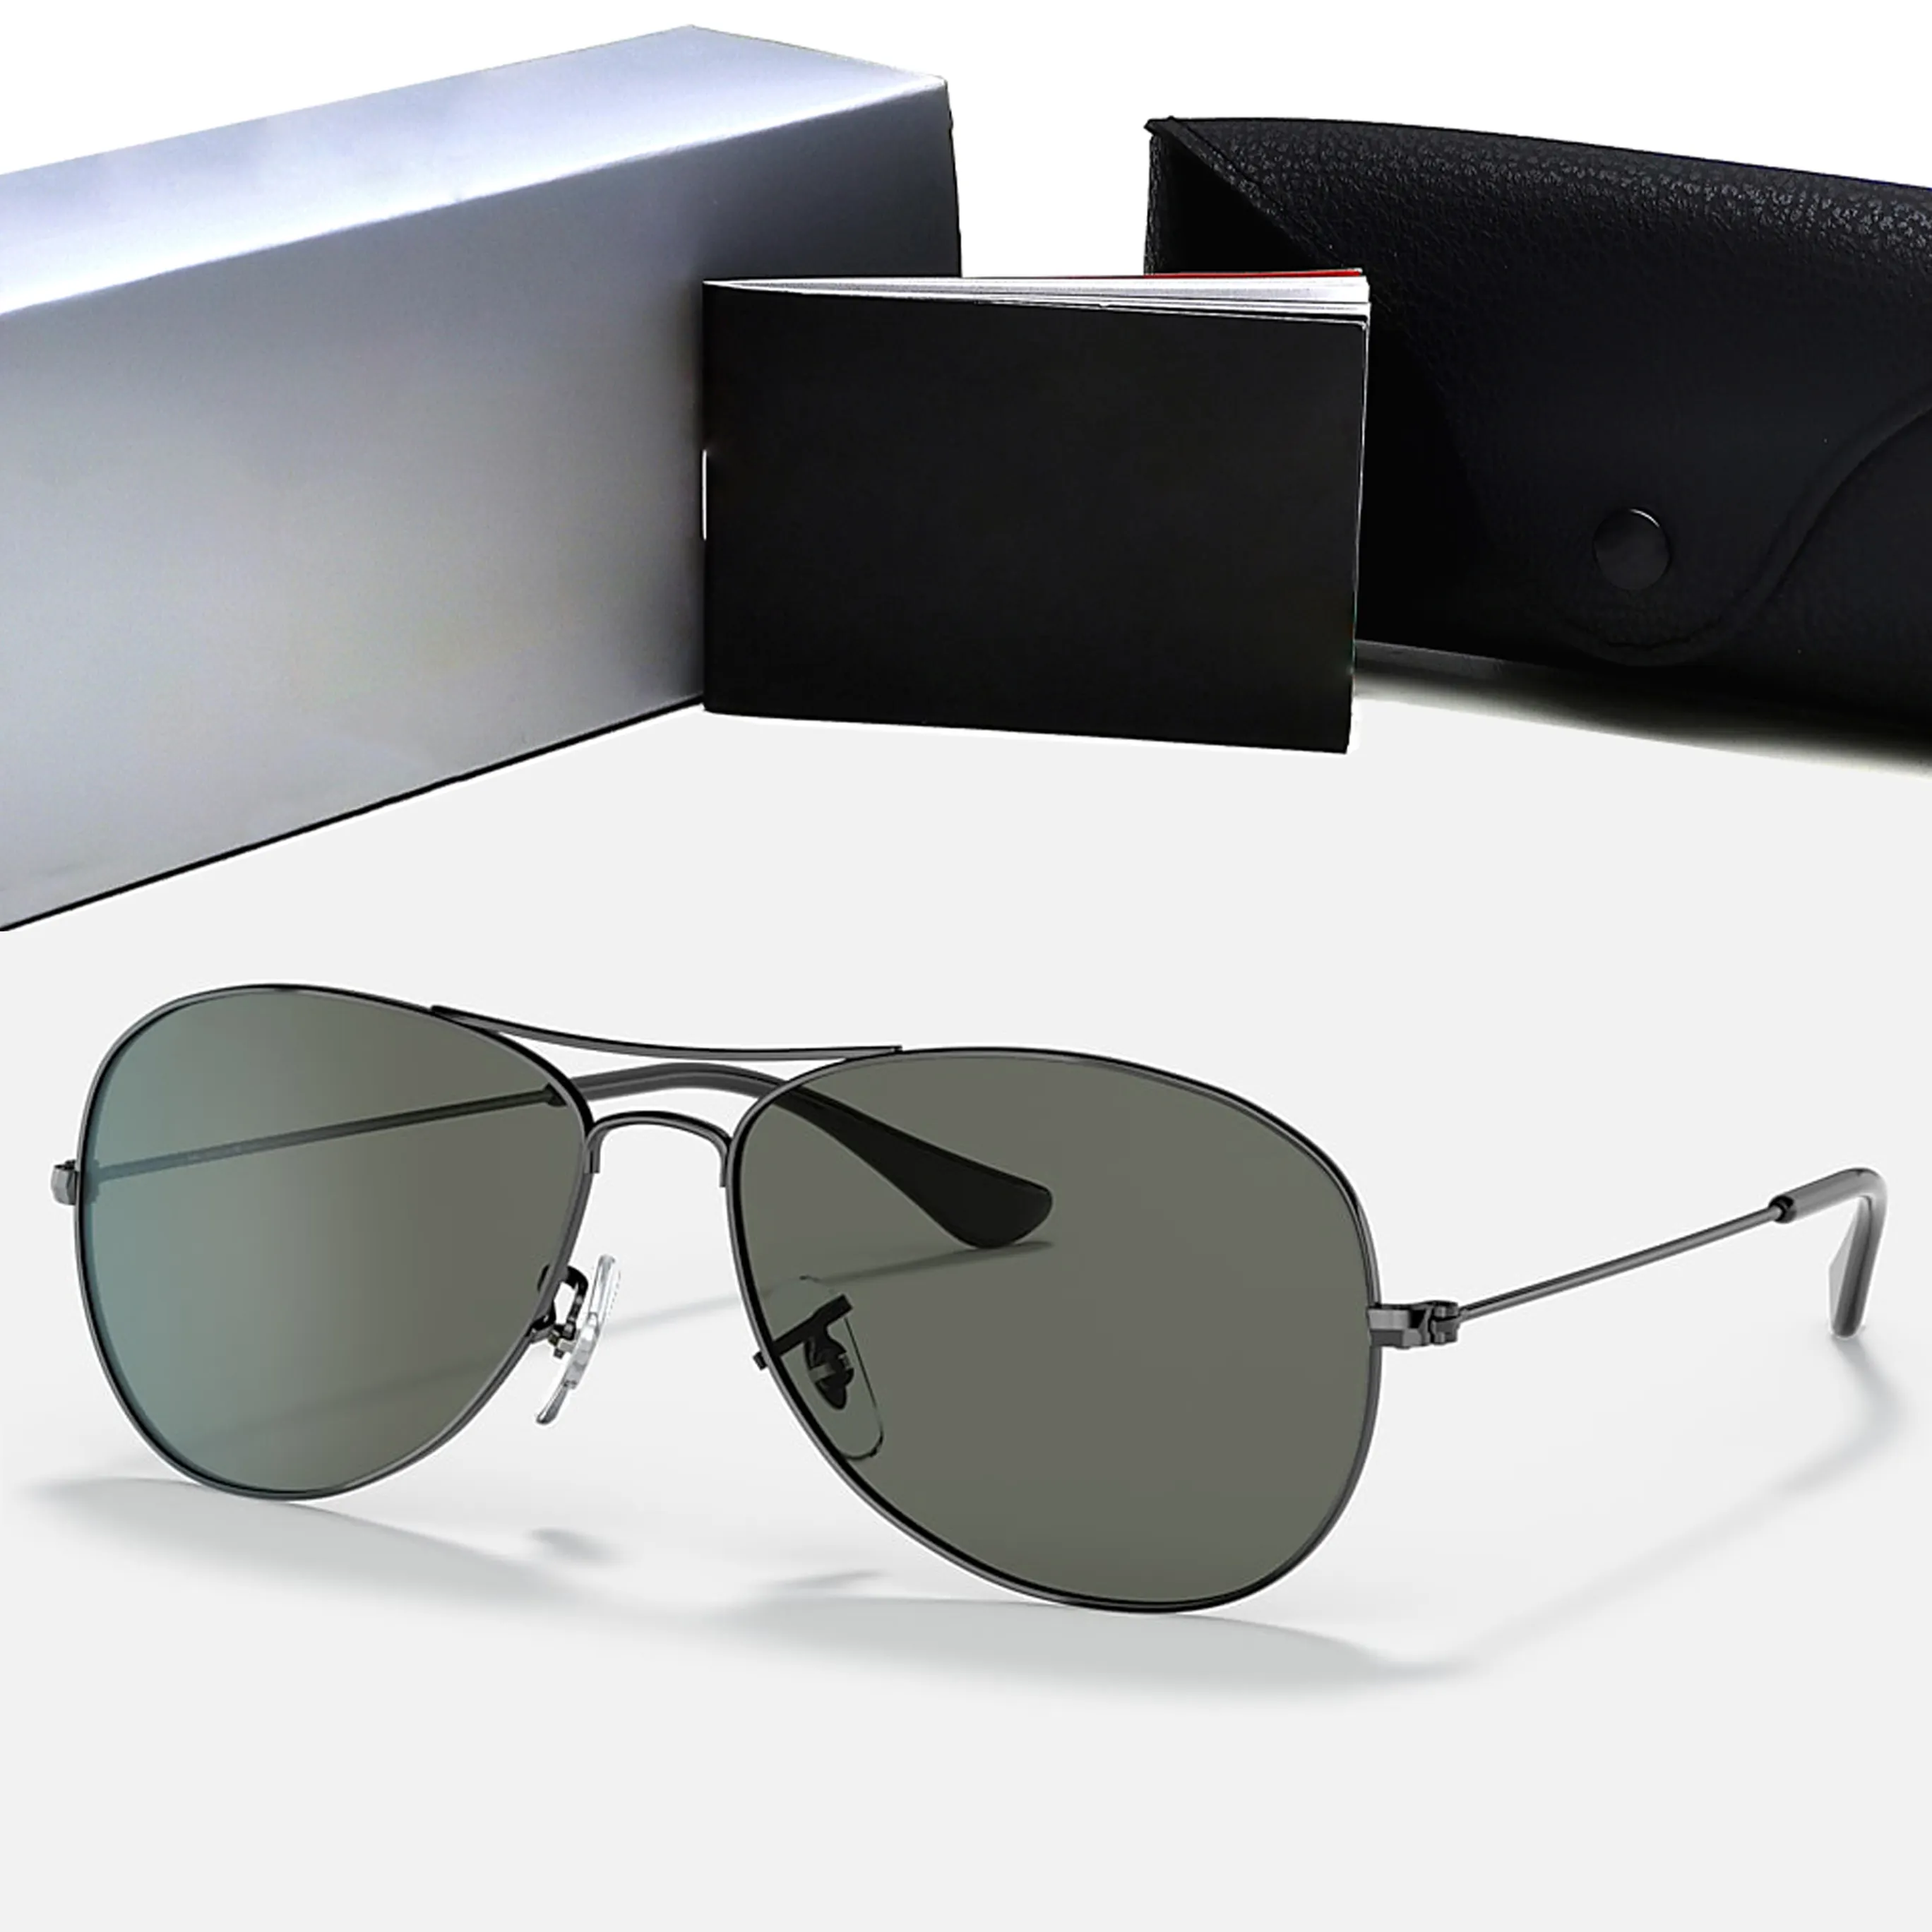 Lunettes de soleil pilotes classiques de Style Premium polarisées 100% protection UV hommes conduite lunettes de soleil pour marque Design miroir lunettes mâle